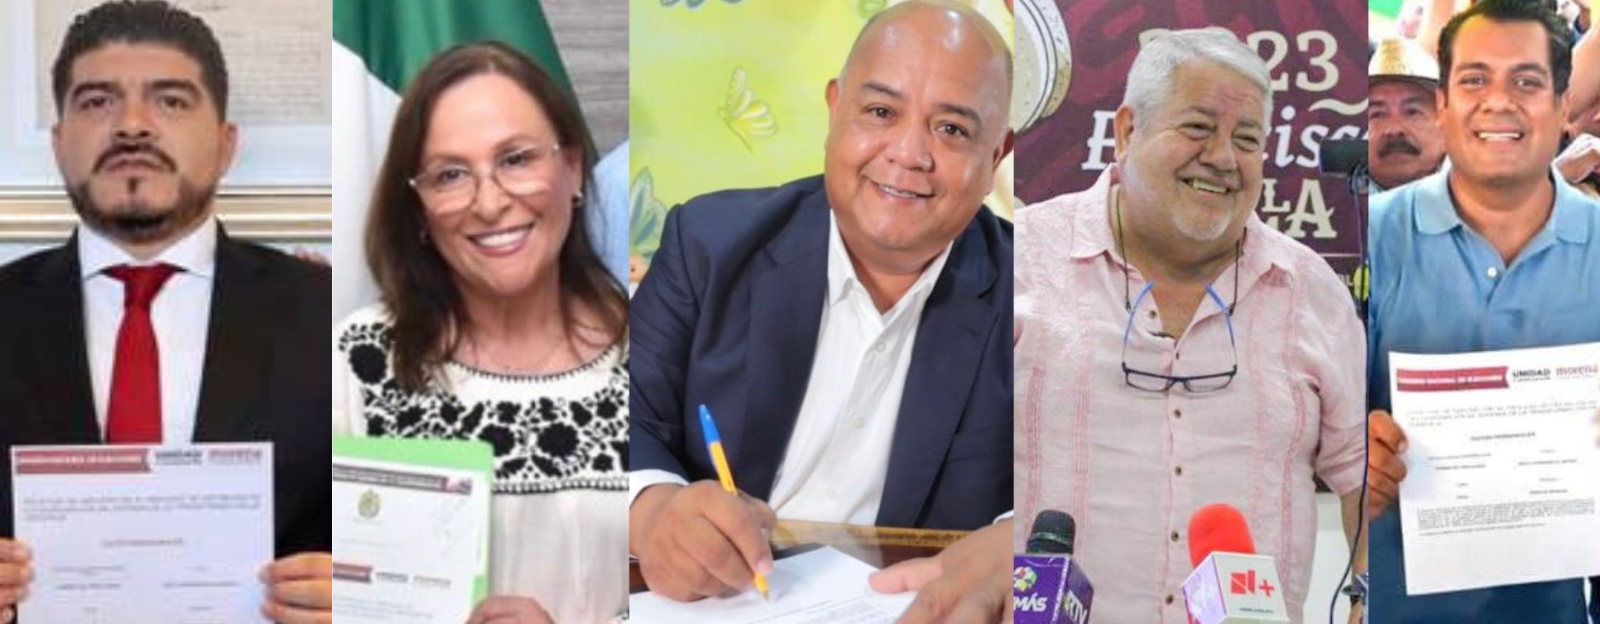 Cinco ‘corcholatas’ completaron su registro en Veracruz para buscar la gubernatura